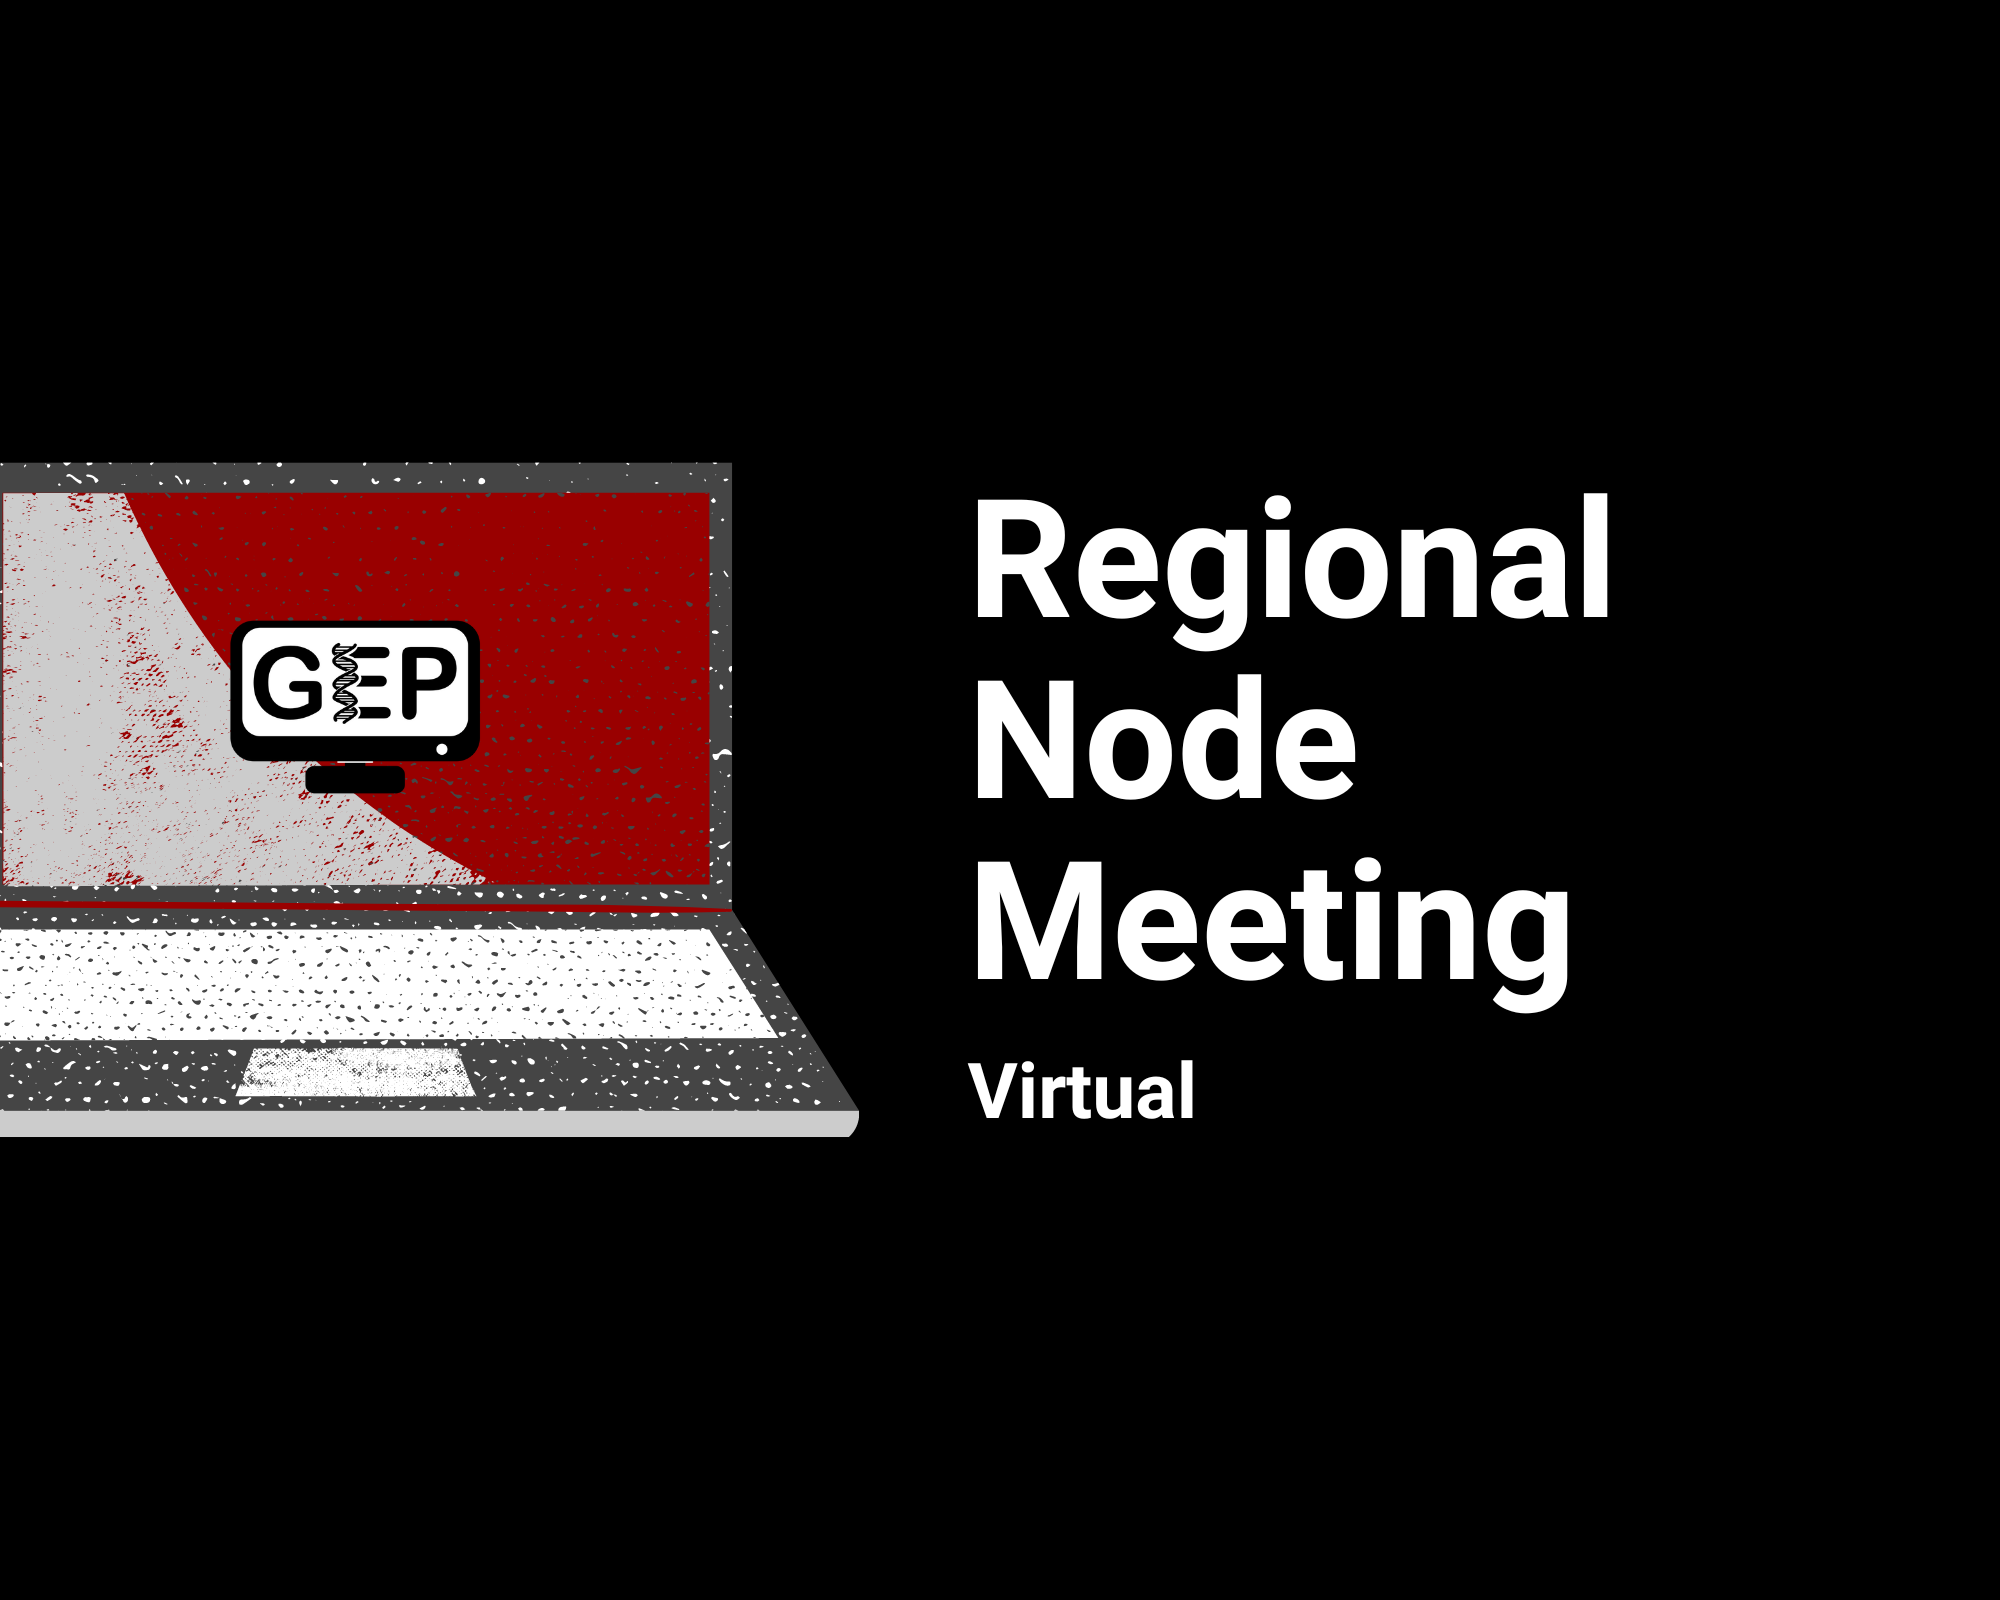 GEP Regional Node Meeting Virtual